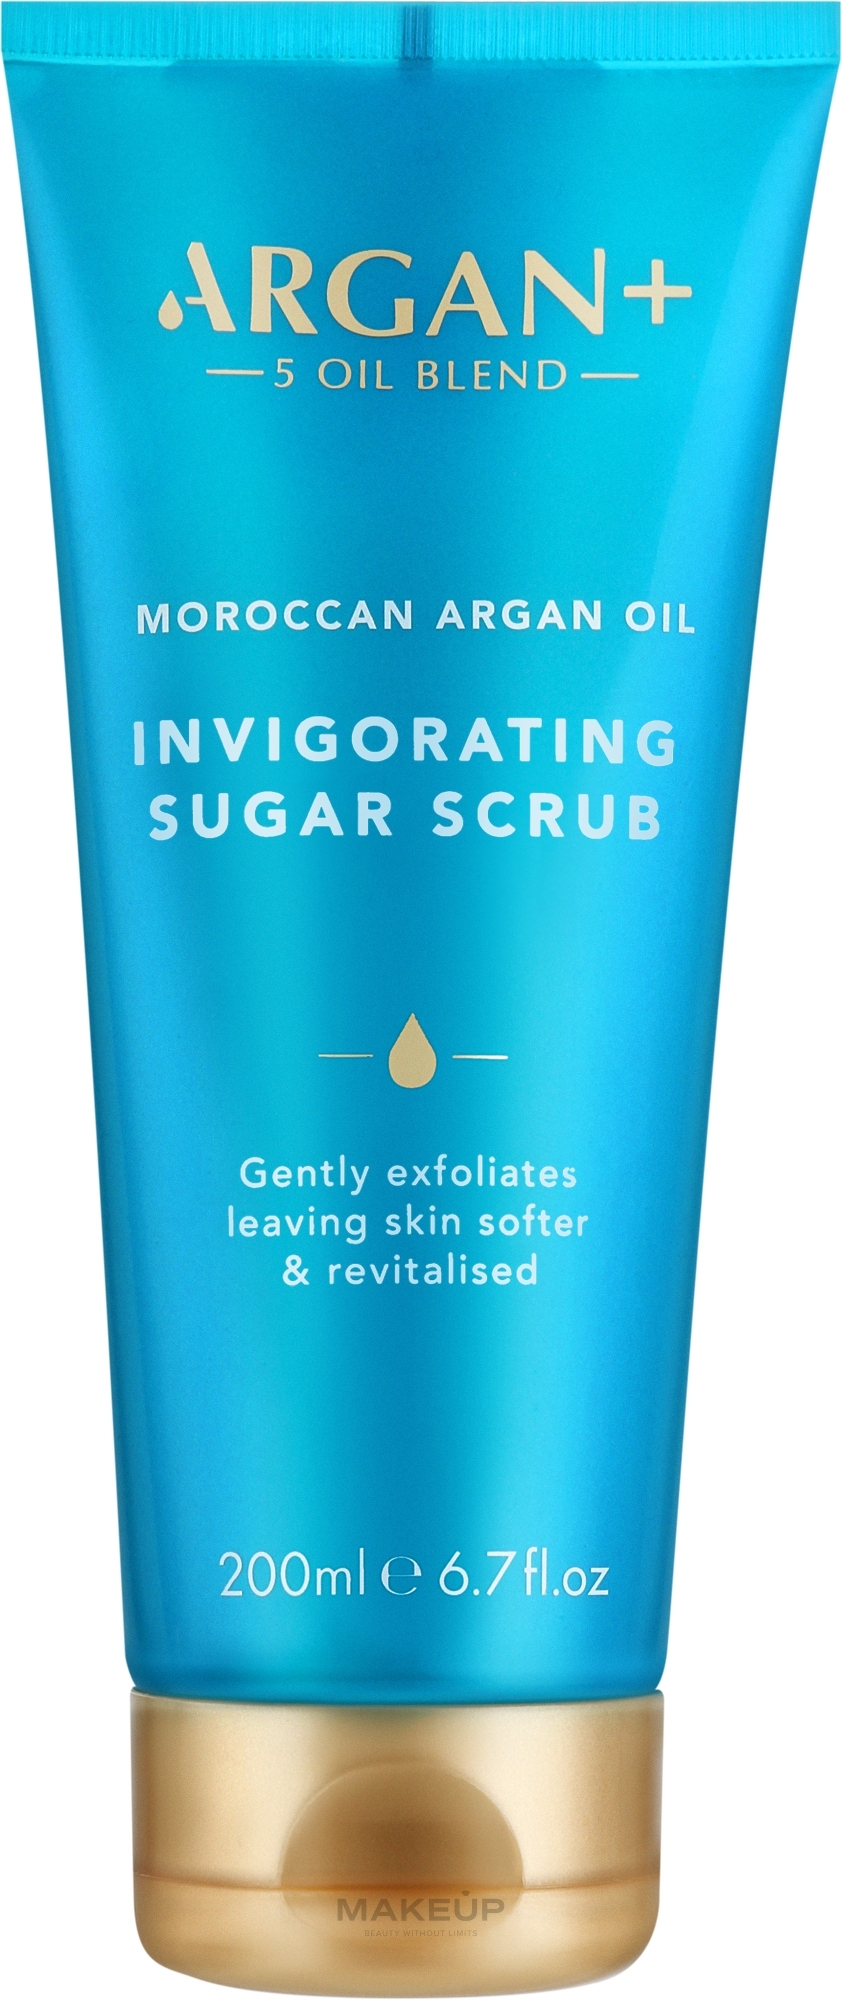 Скраб сахарный для тела "Морокканское аргановое масло" - Argan+ Moroccan Argan Oil Invigorating Sugar Scrub — фото 200ml